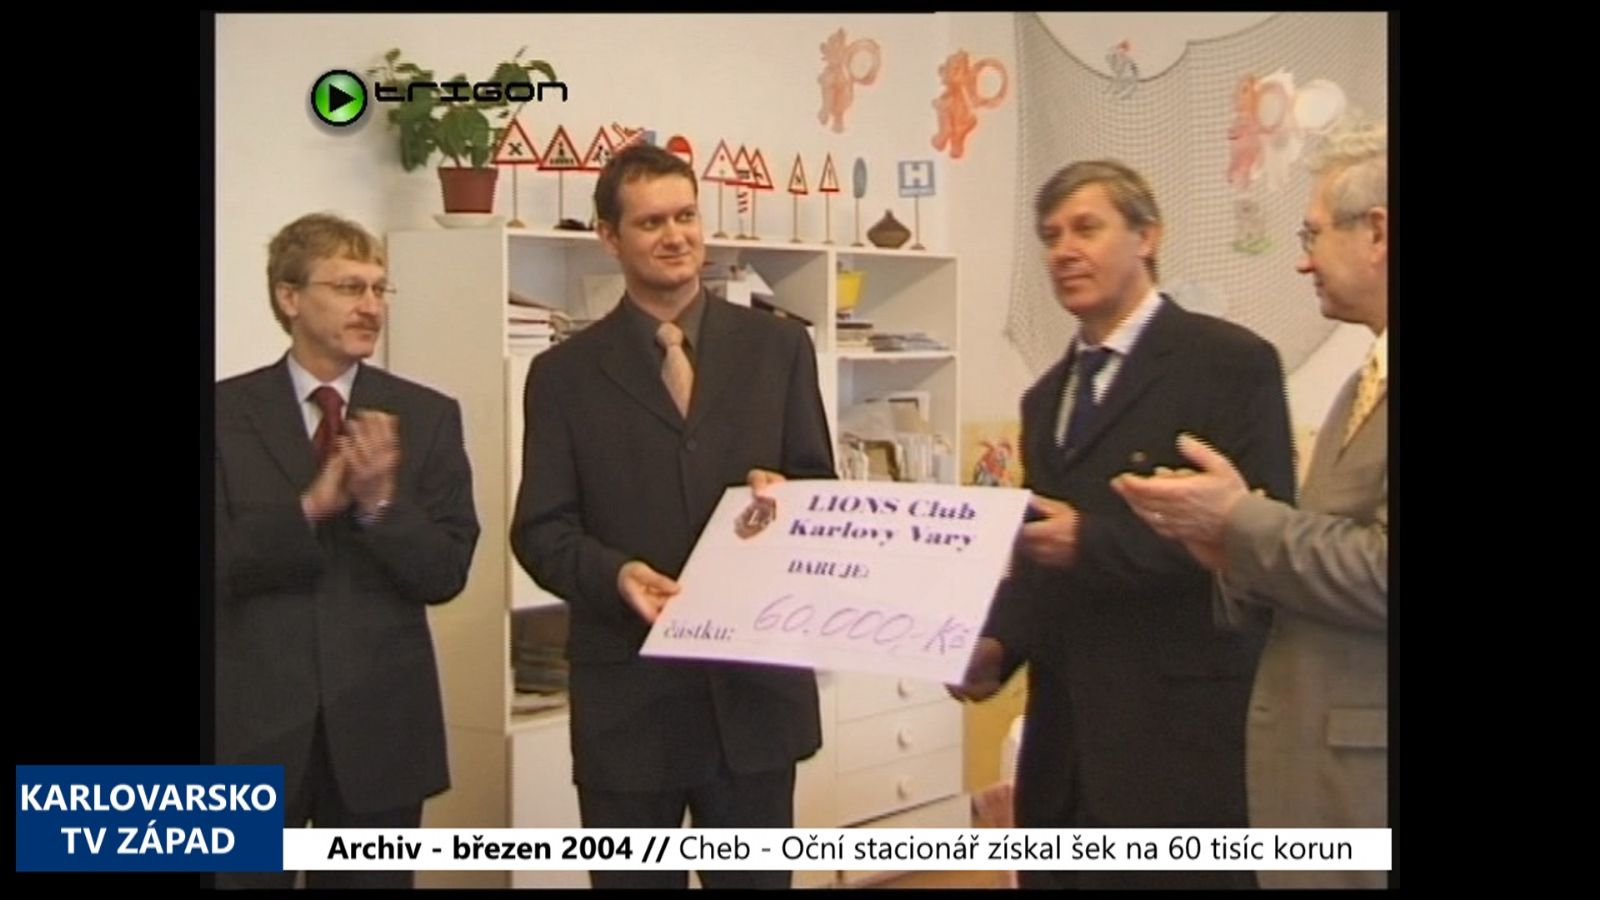 2004 – Cheb: Oční stacionář získal šek na 60 tisíc korun (TV Západ)